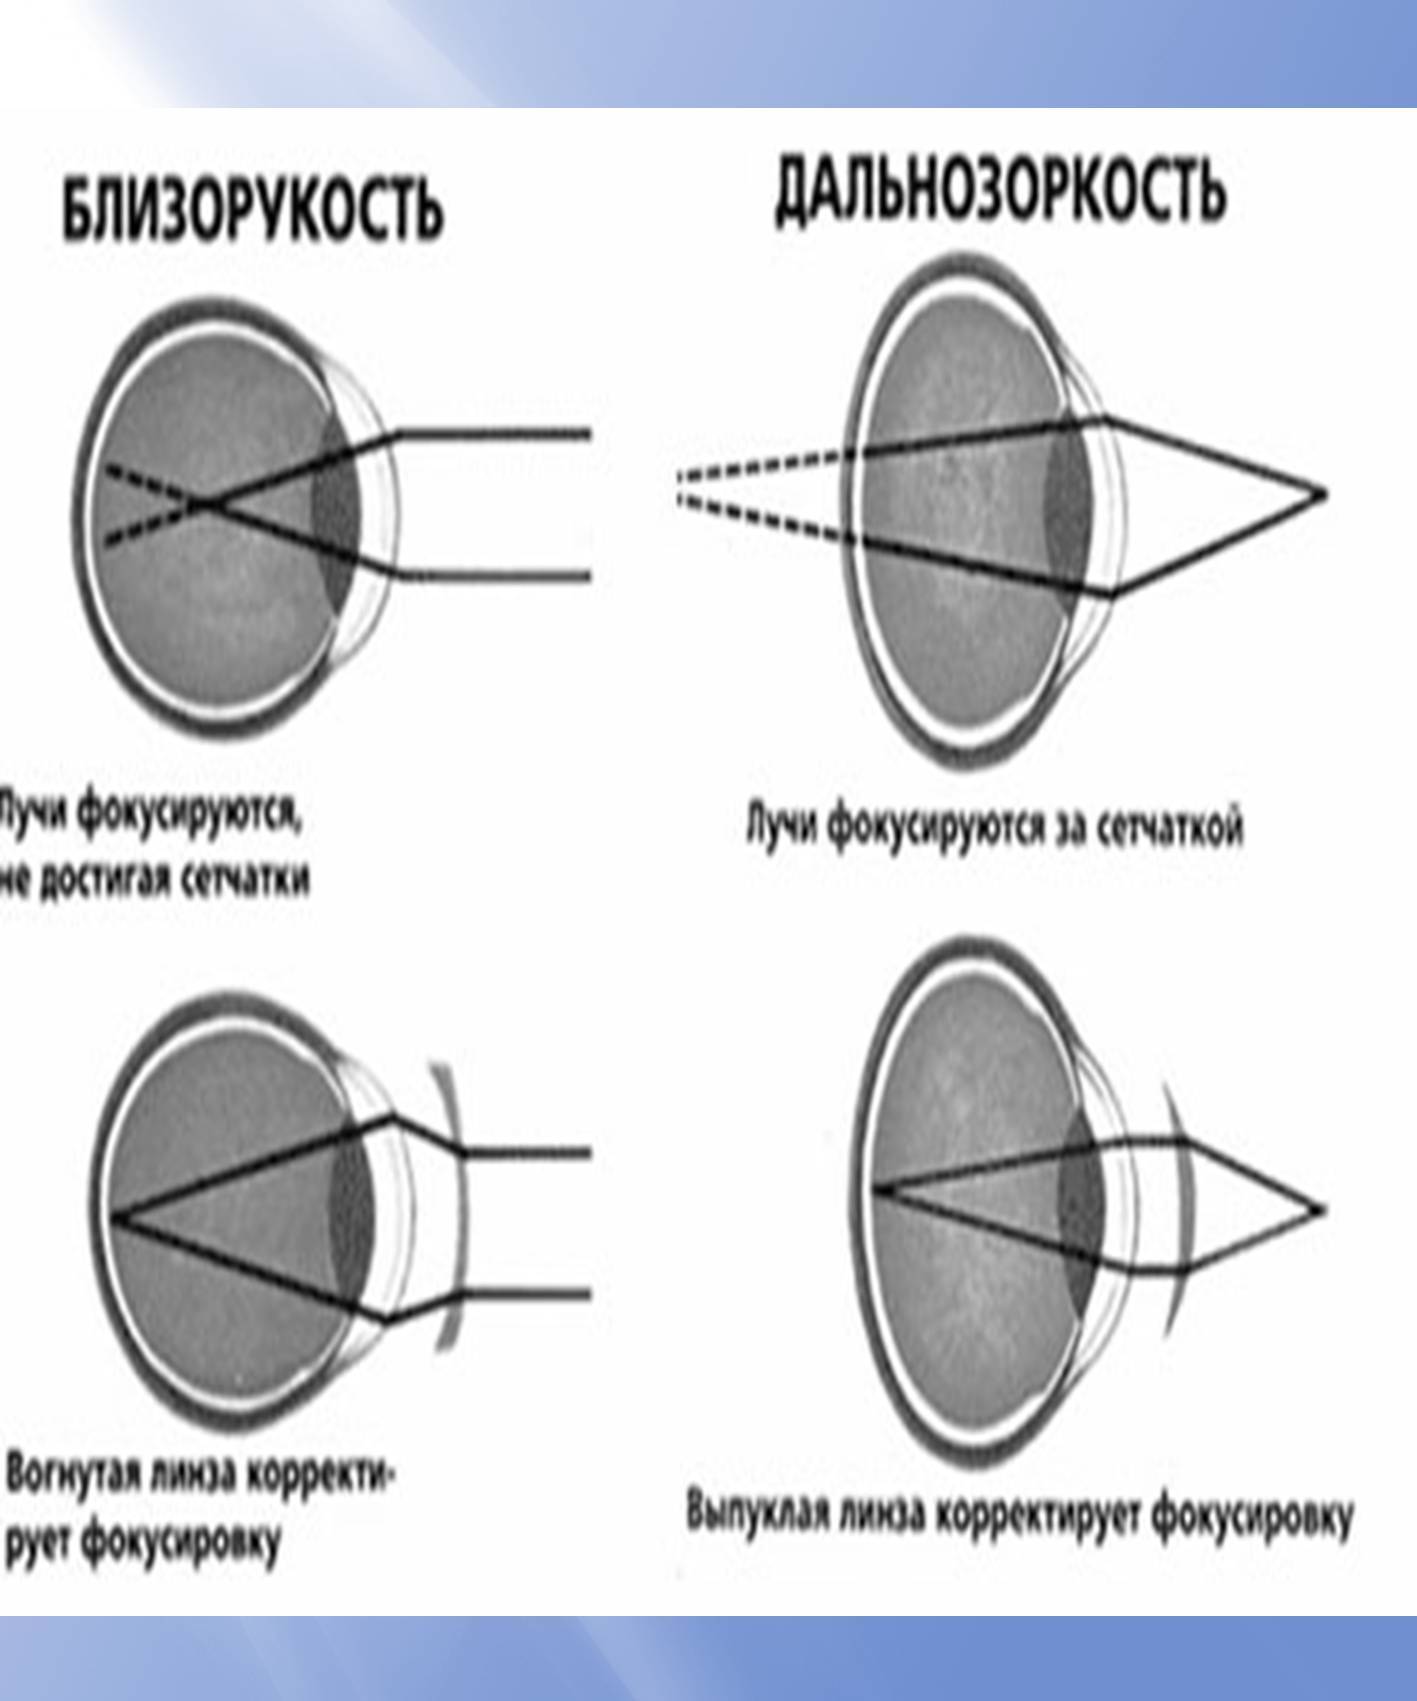 Очки при дальнозоркости: какие нужны и как выбрать, правила очковой коррекции при гиперметропии, нужно ли носить постоянно, виды оптики (пресбиопические, для чтения)